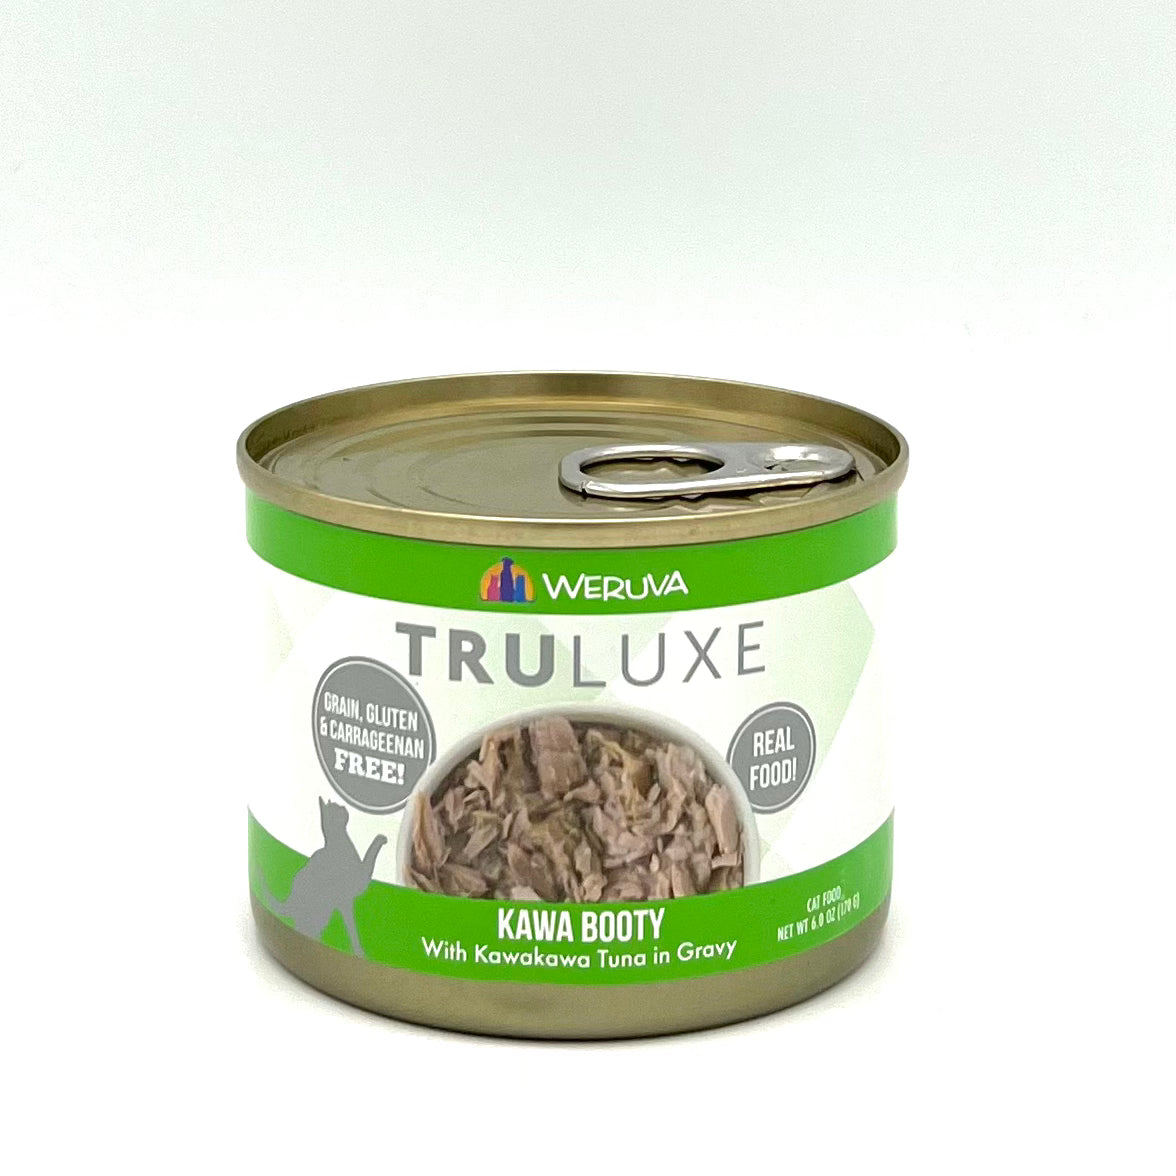 True Luxe Tuna in gravy cat food